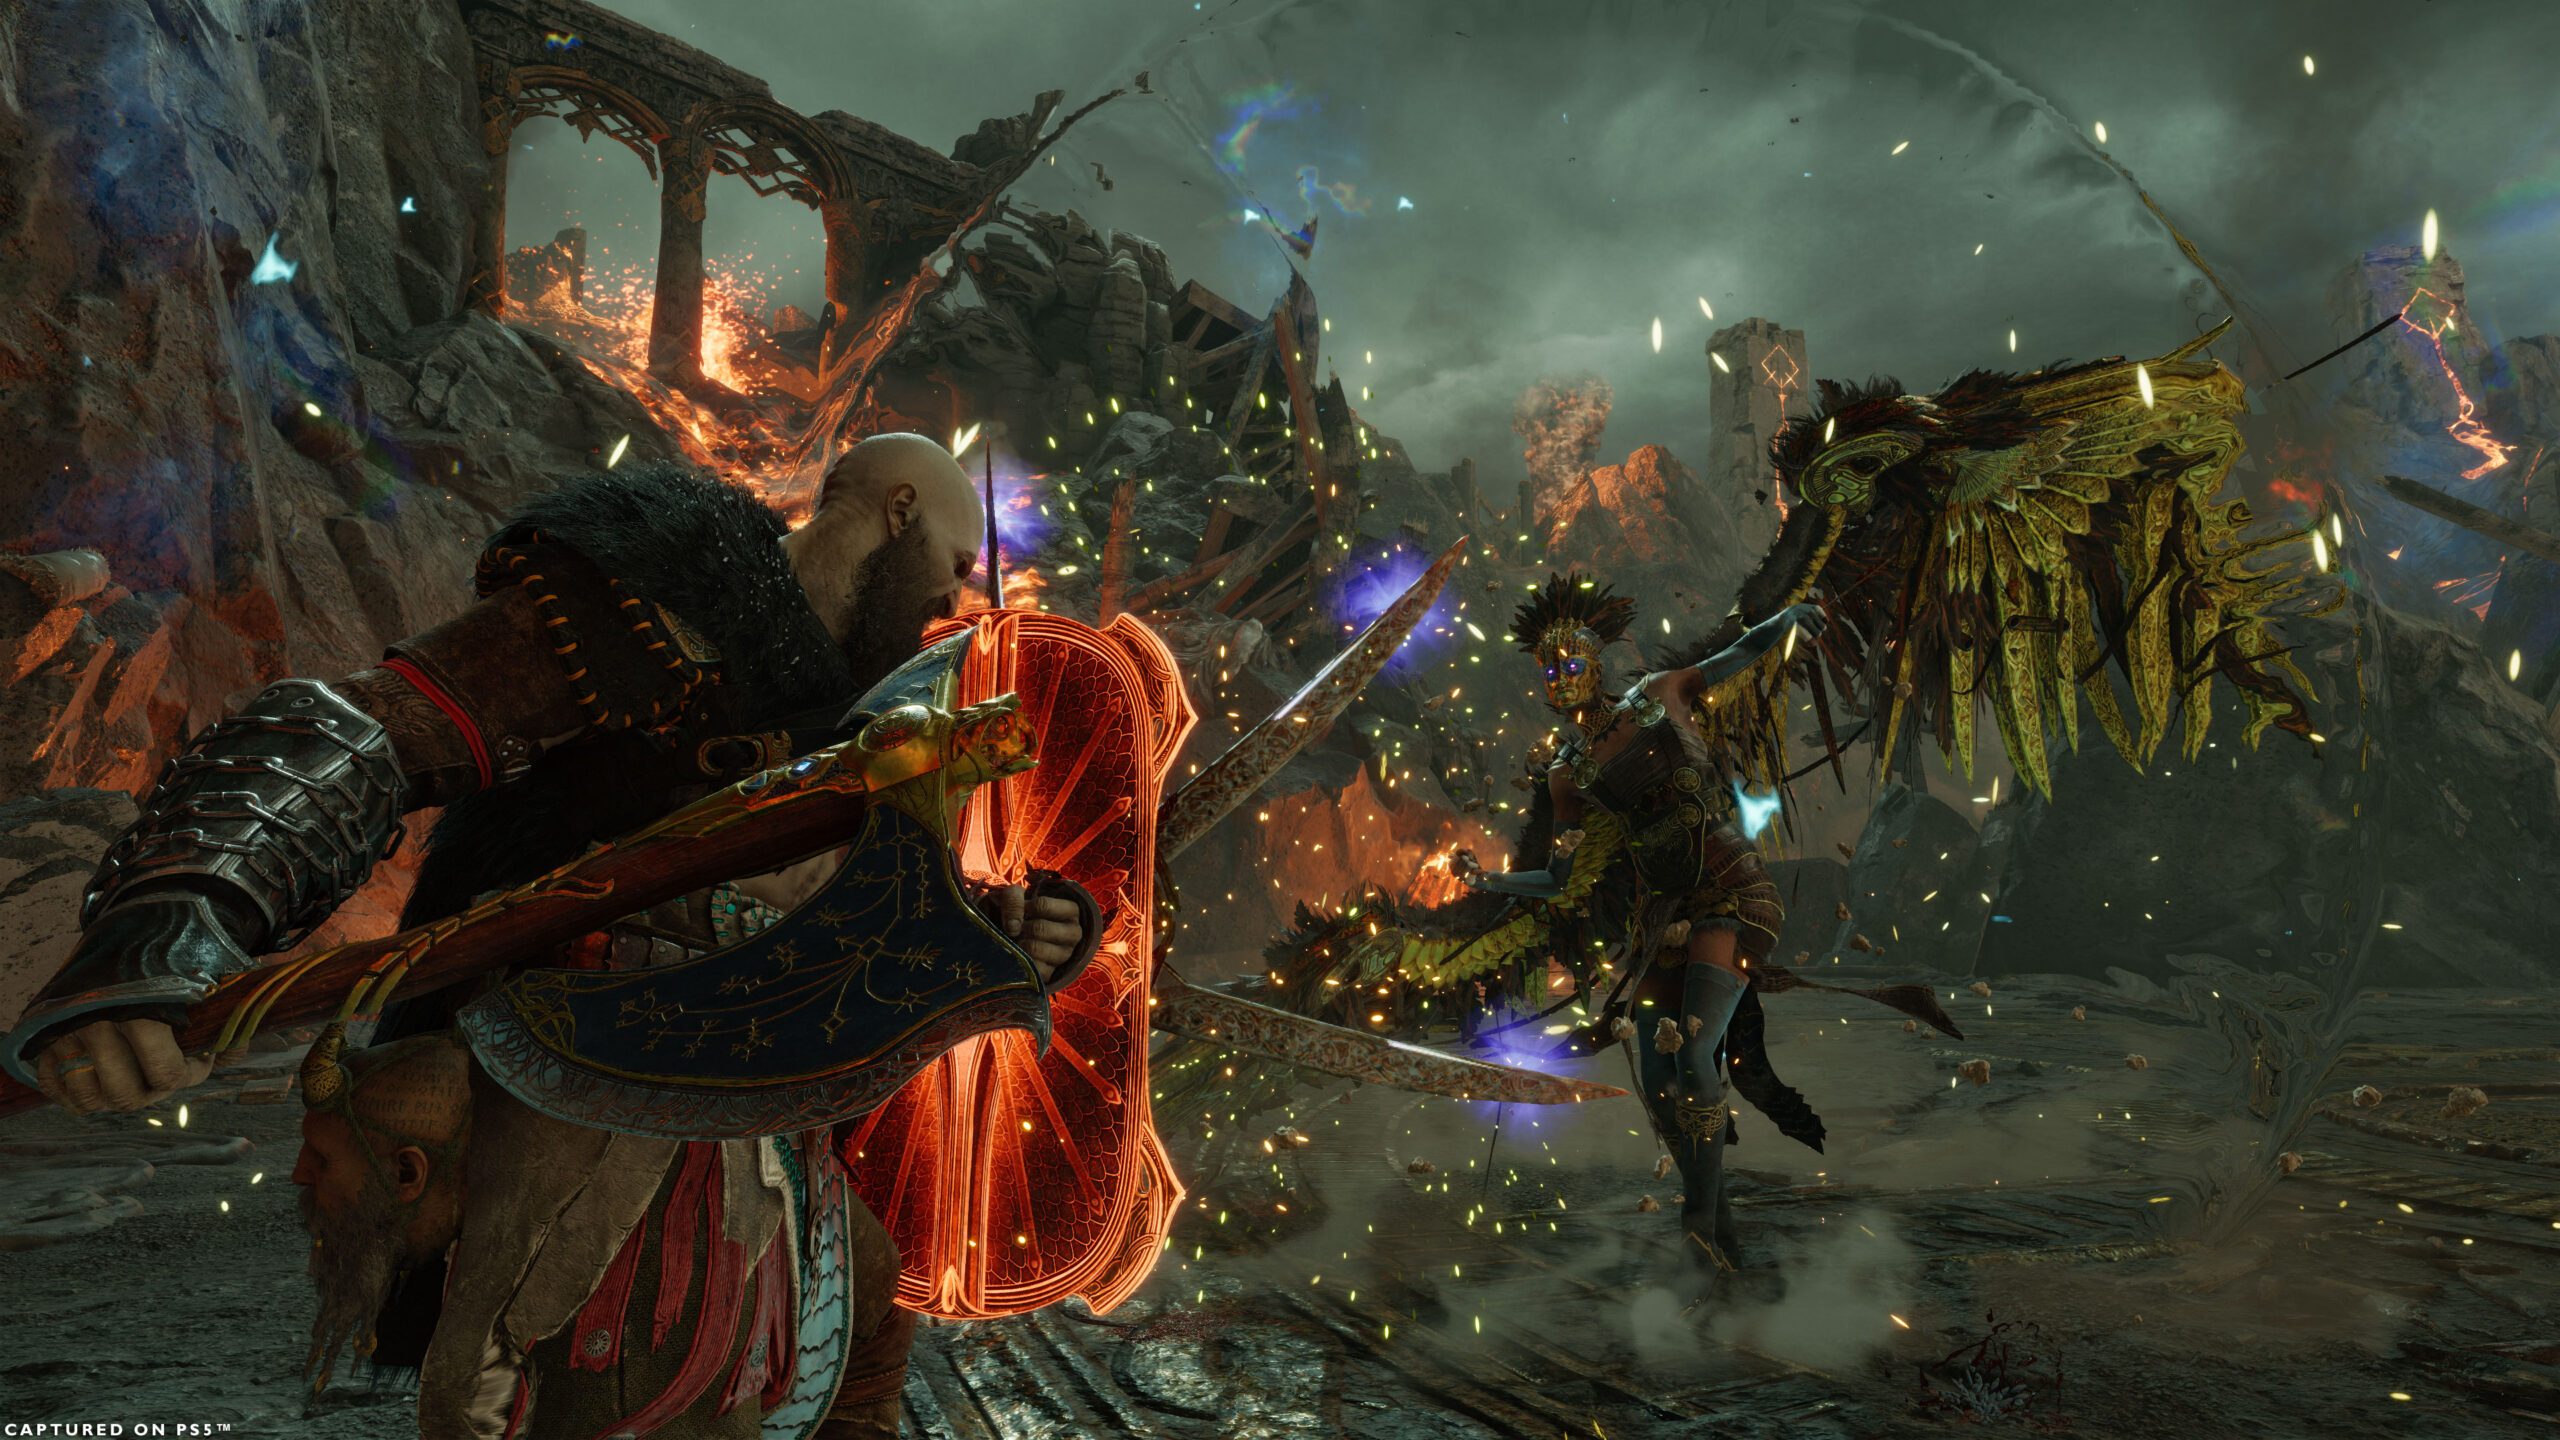 God of War: Ragnarok deve oferecer 40 horas de jogo; tamanho do game no PS4  foi revelado 